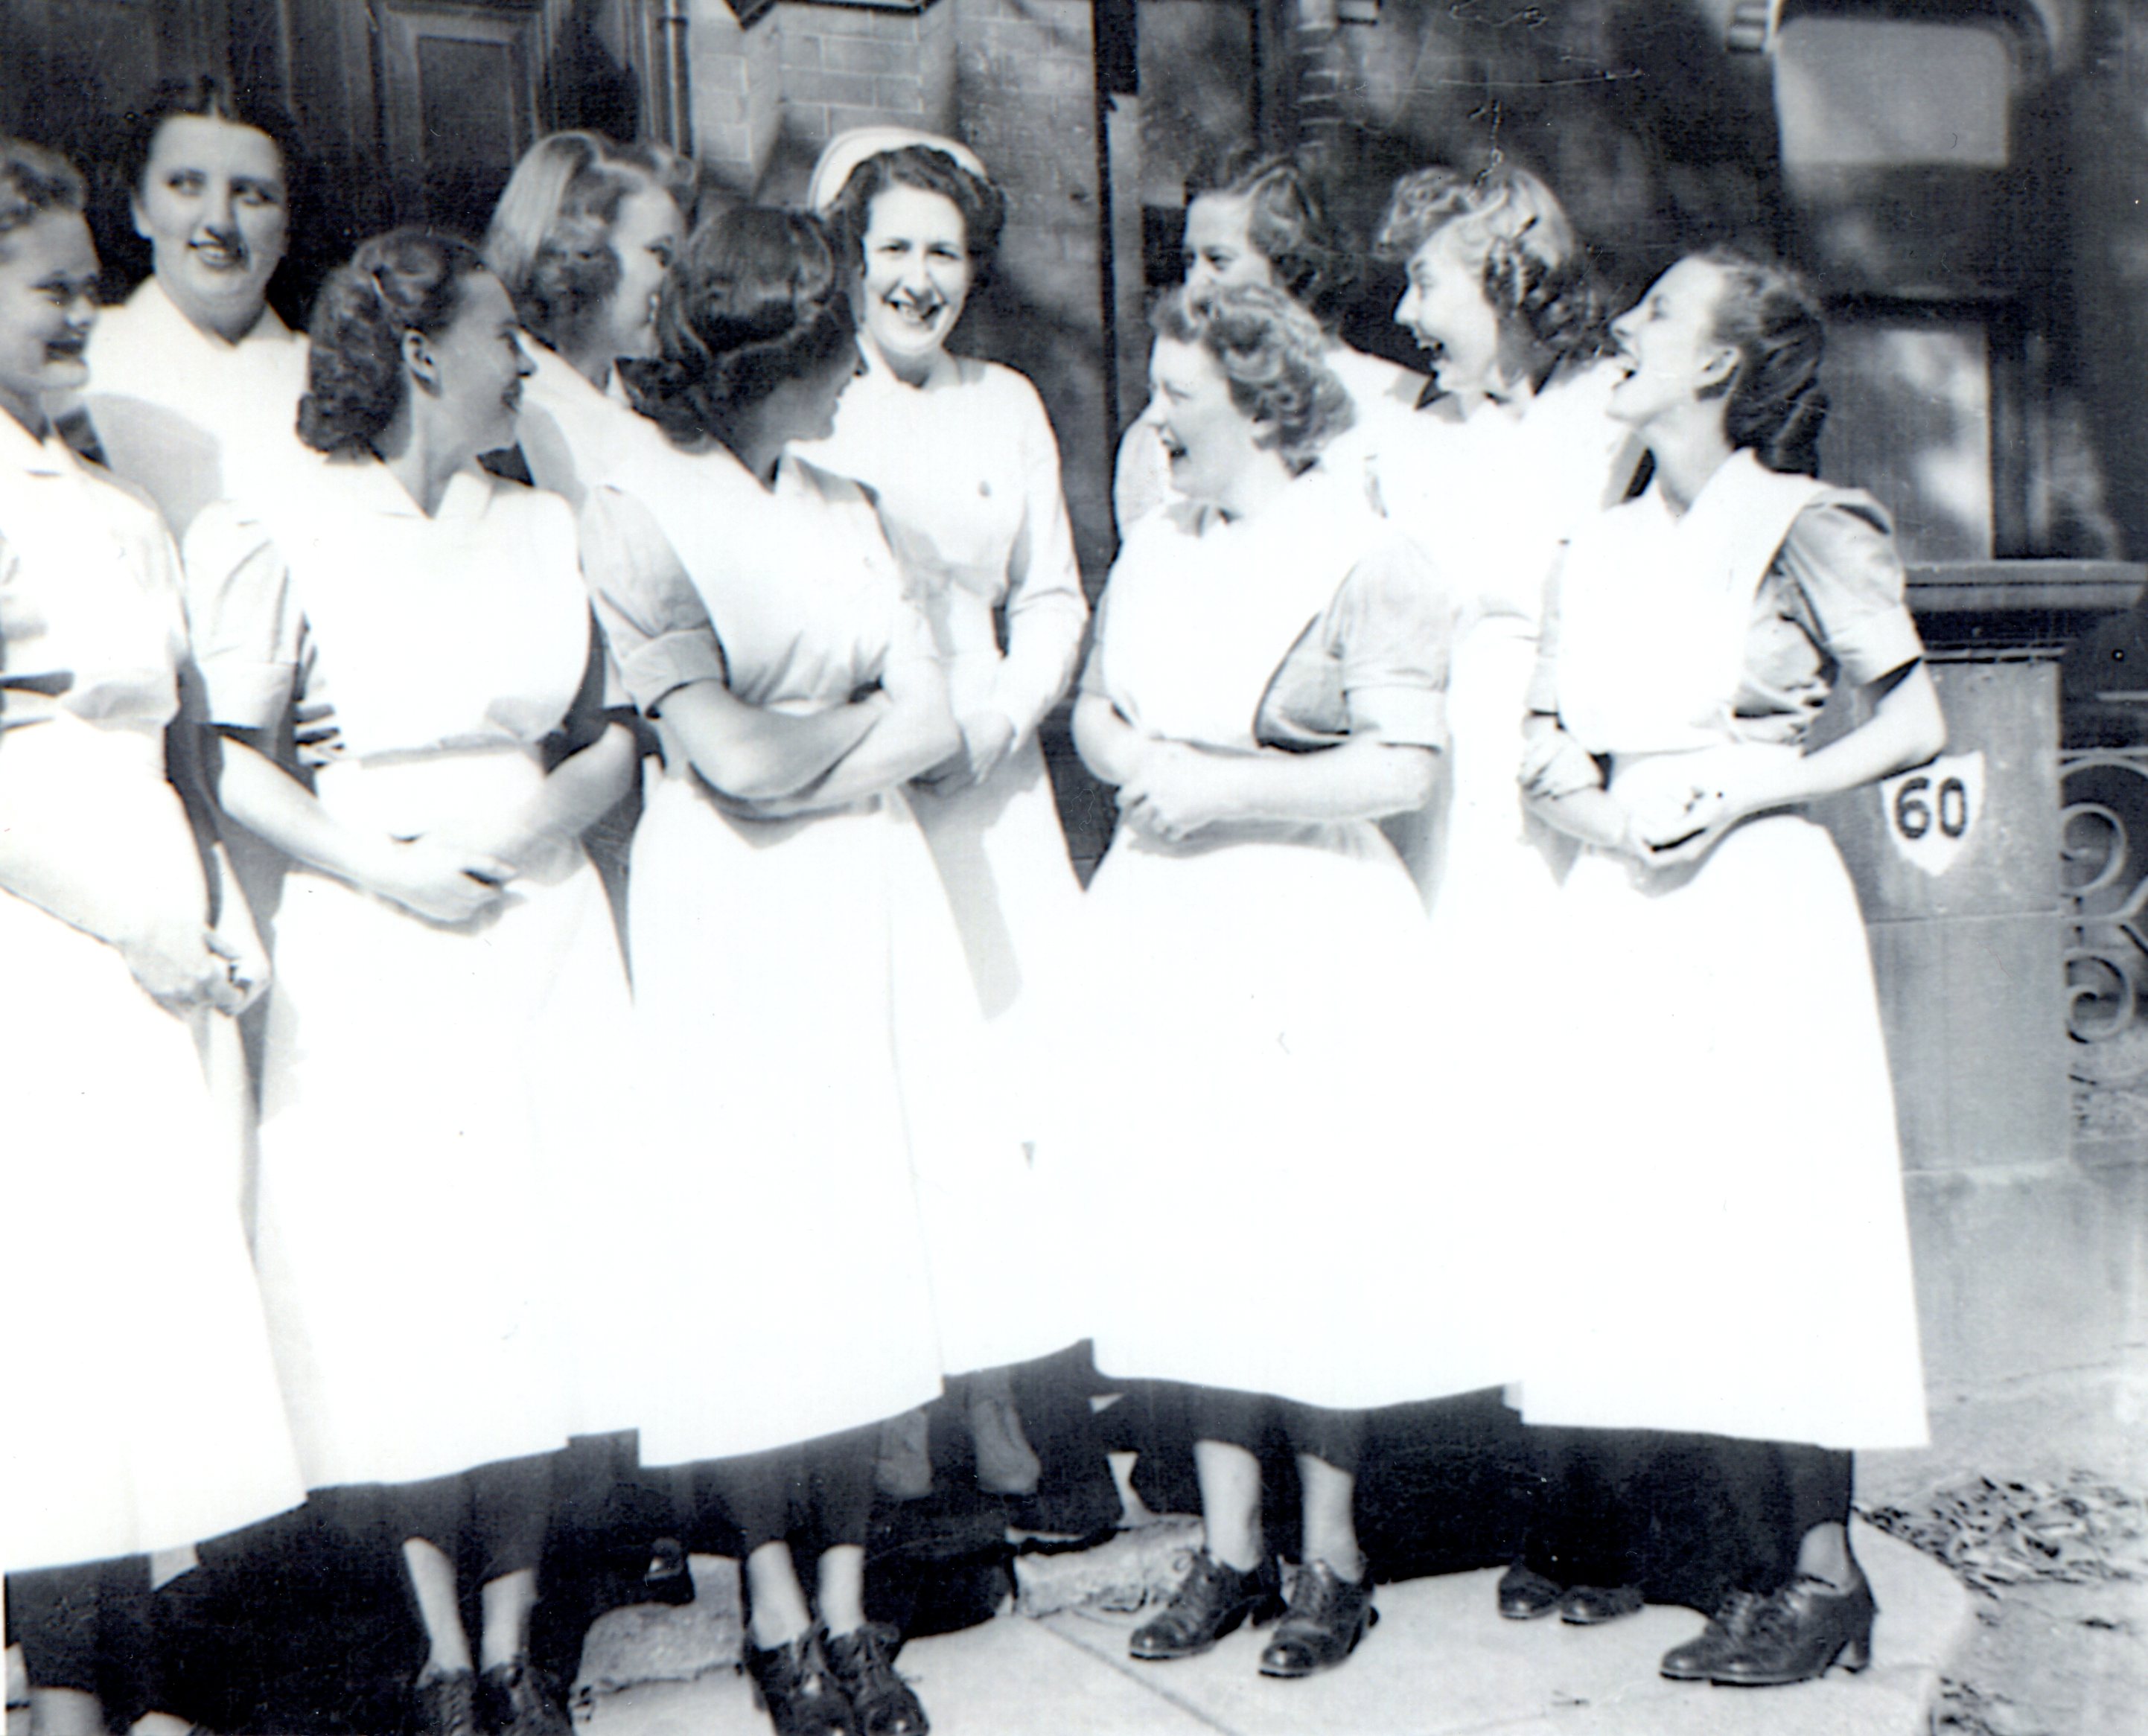 Ten laughing young women in uniforms. One is wearing a nurses' cap.